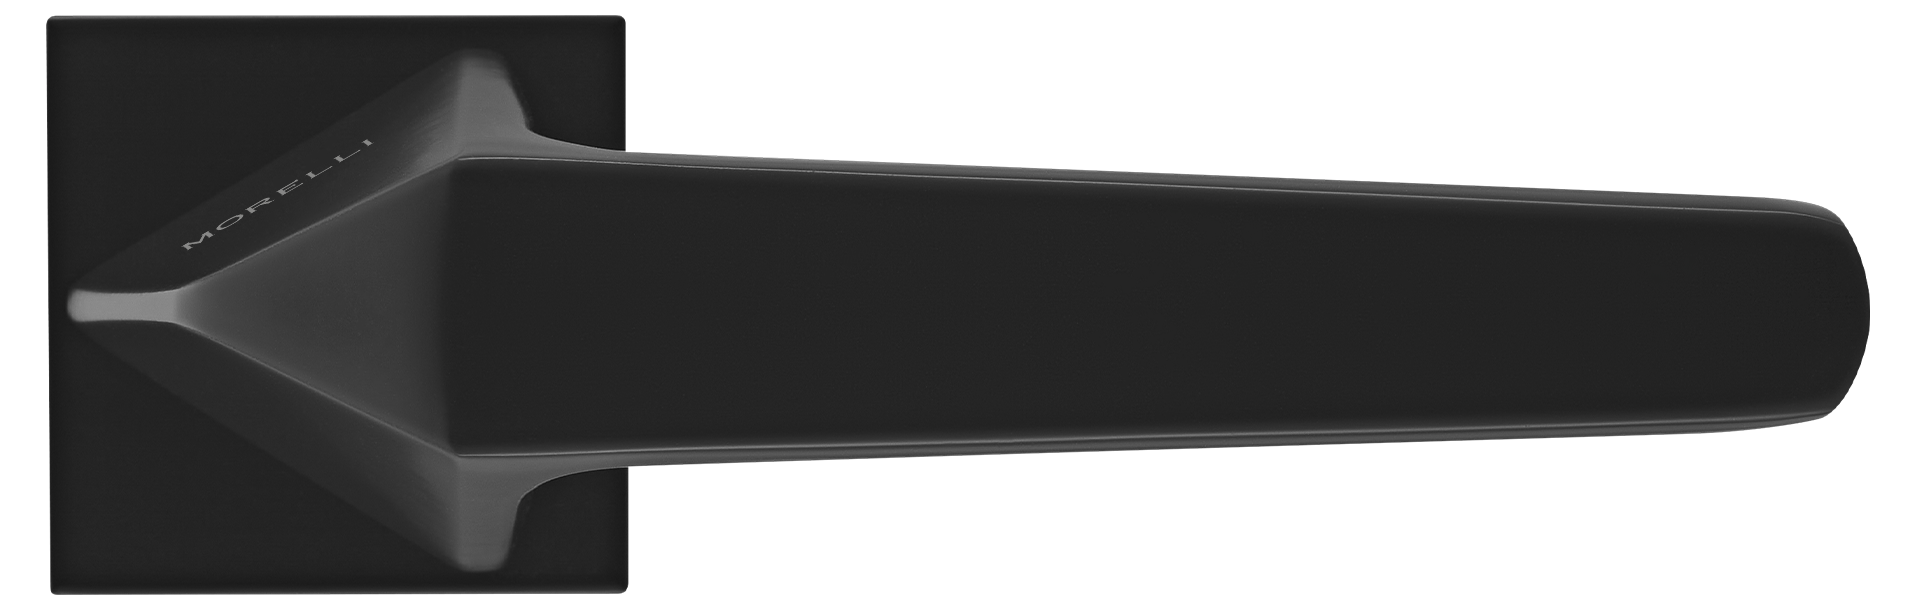 SOUK ручка дверная на квадратной розетке 6 мм, MH-55-S6 BL, цвет - черный фото купить в Краснодаре